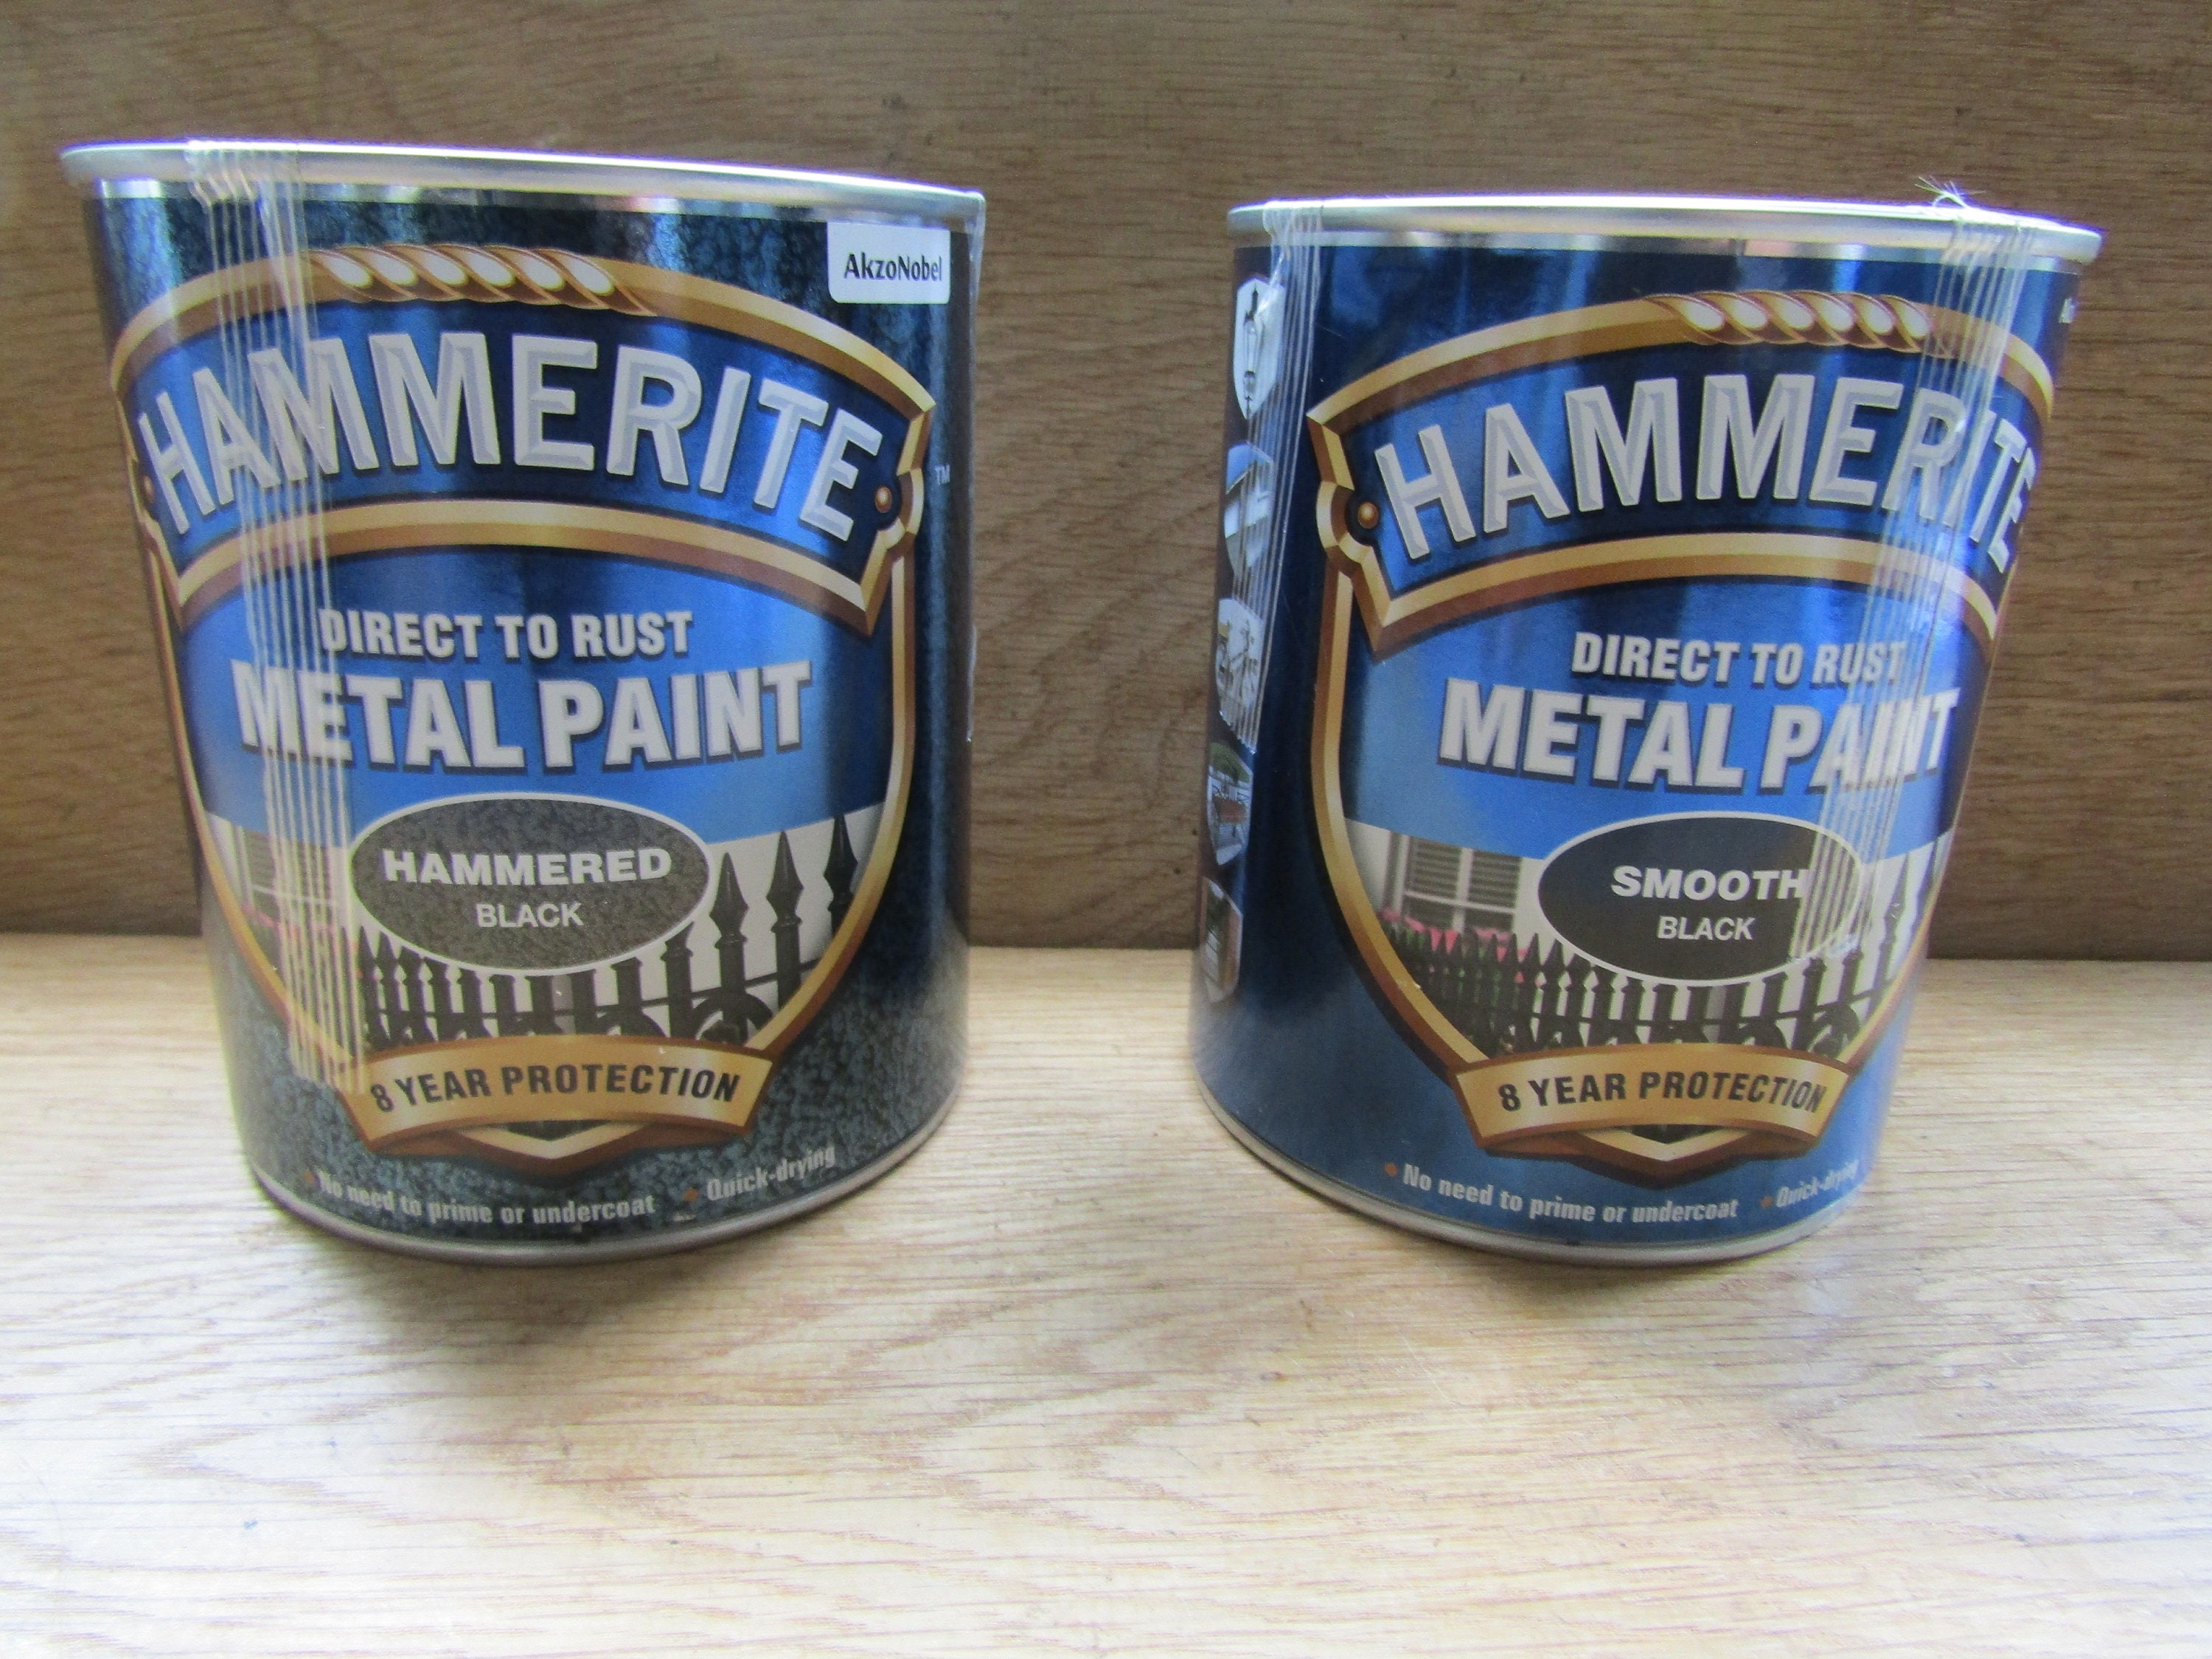 Rust-oleum Metallic Multi-purpose Spray Paint Gold Chrome Copper